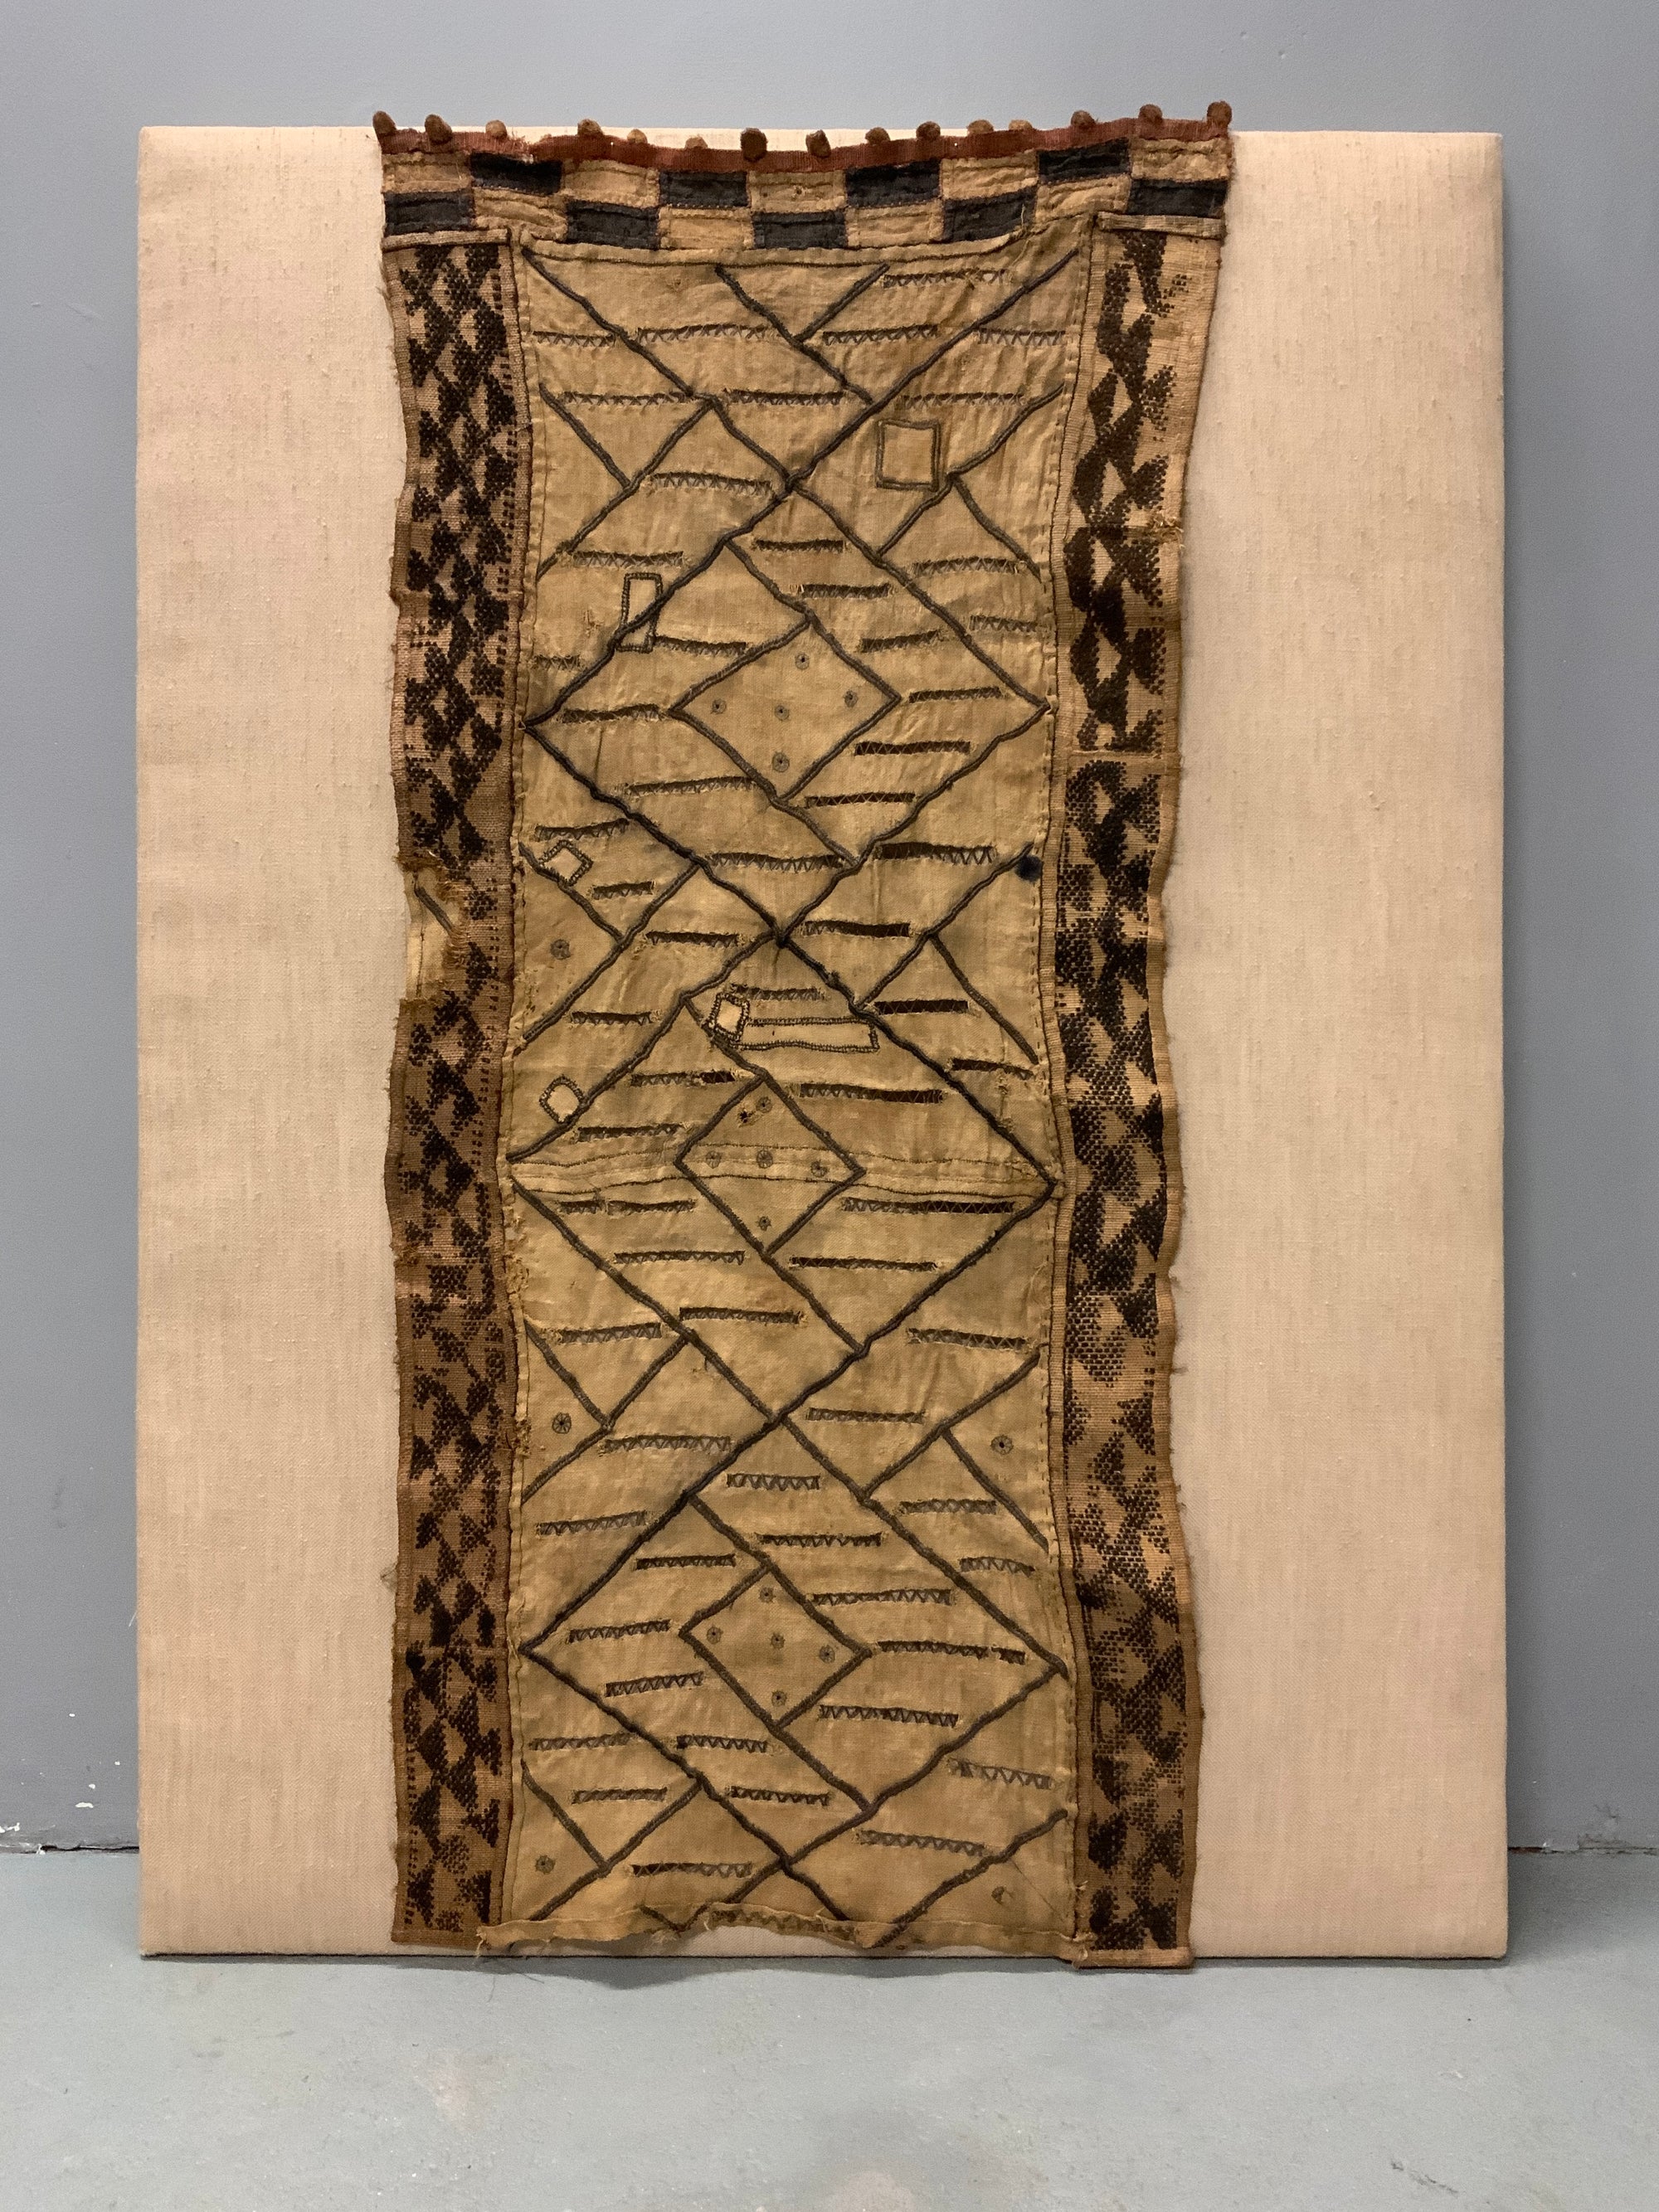 Congo Kuba skirt rafia fragment (123 x 54cm)